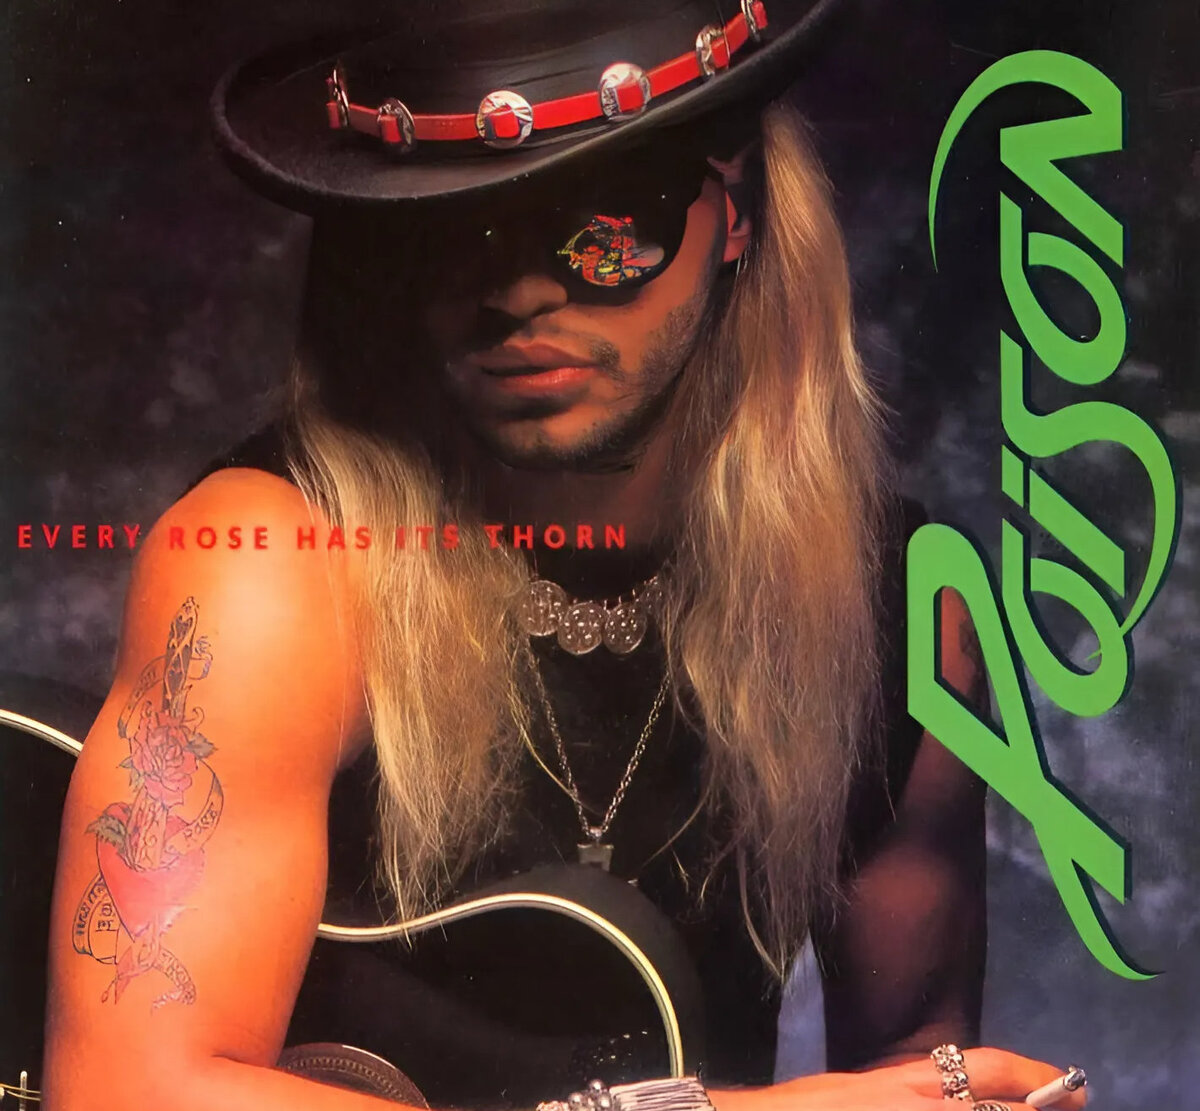 На обложке сингла изображён задумчивый мужчина с щетиной, татуированными бицепсами, гитарой под мышкой и сигаретой в руке.